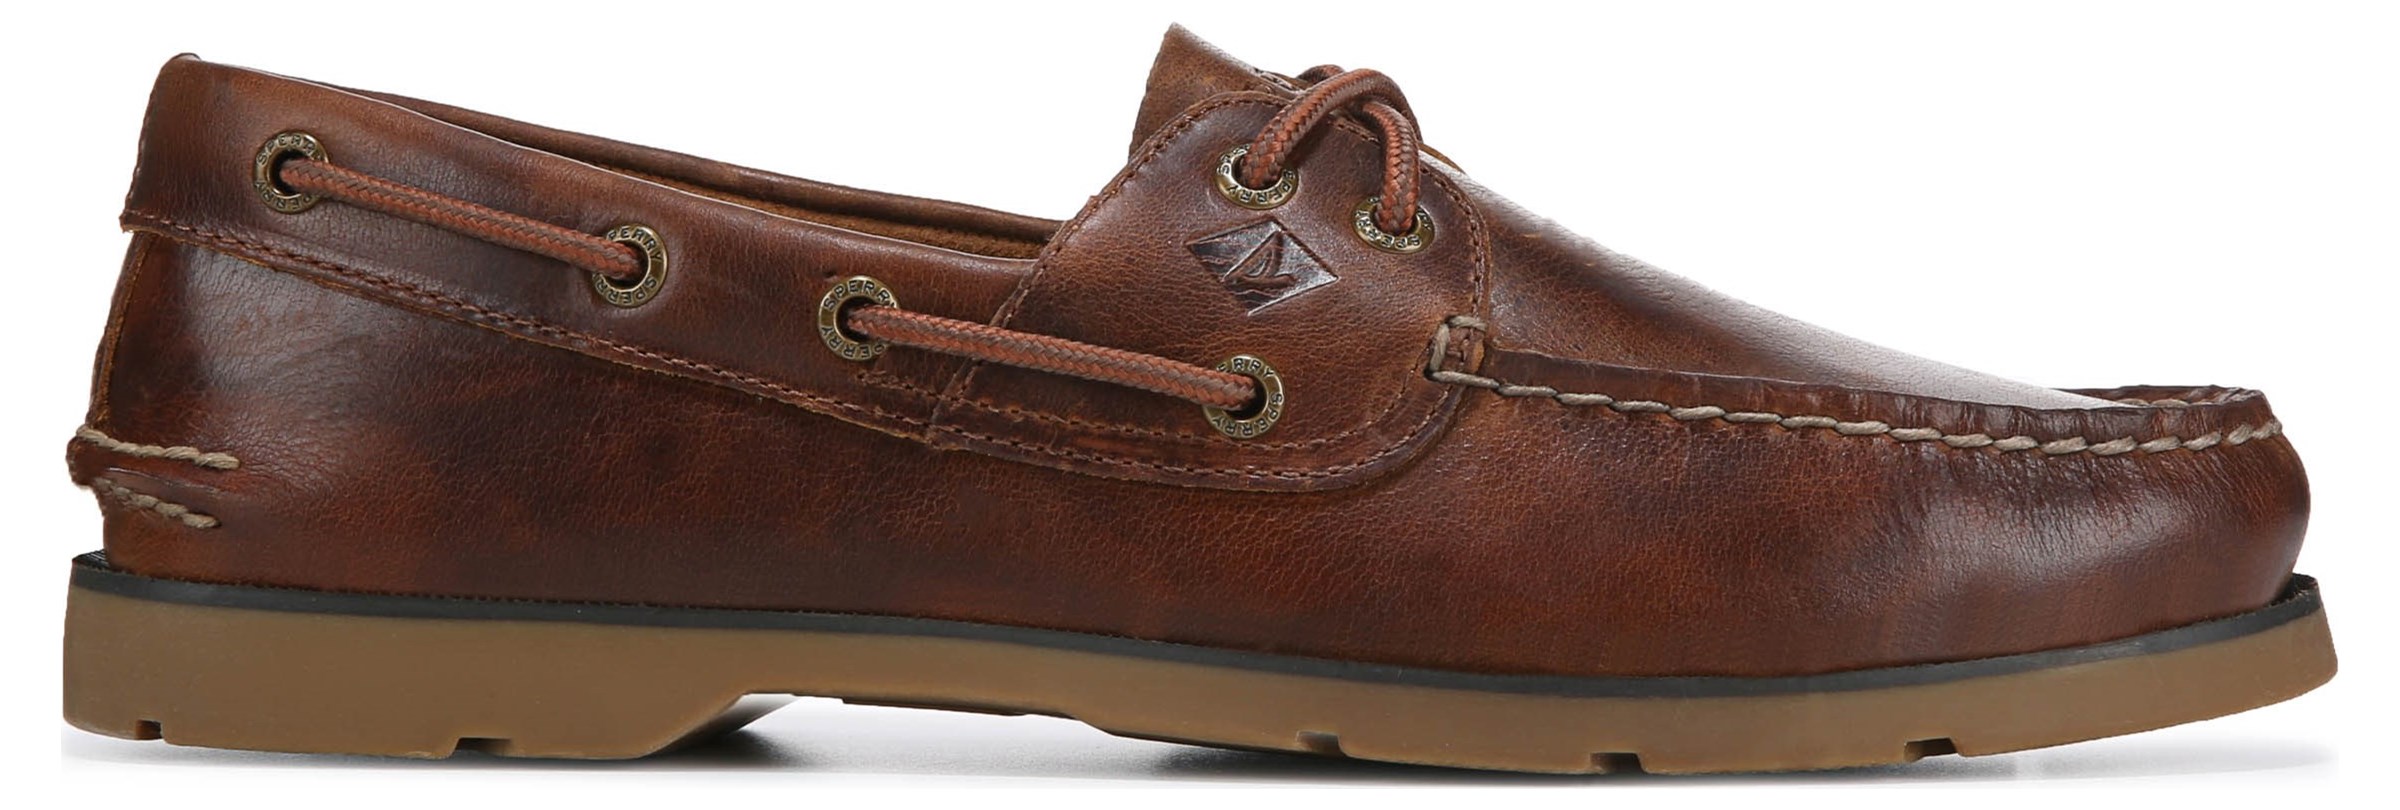 Sperry Top-Sider Men's Leeward 2-Eye Brown/Tan Boat Shoes NWB 